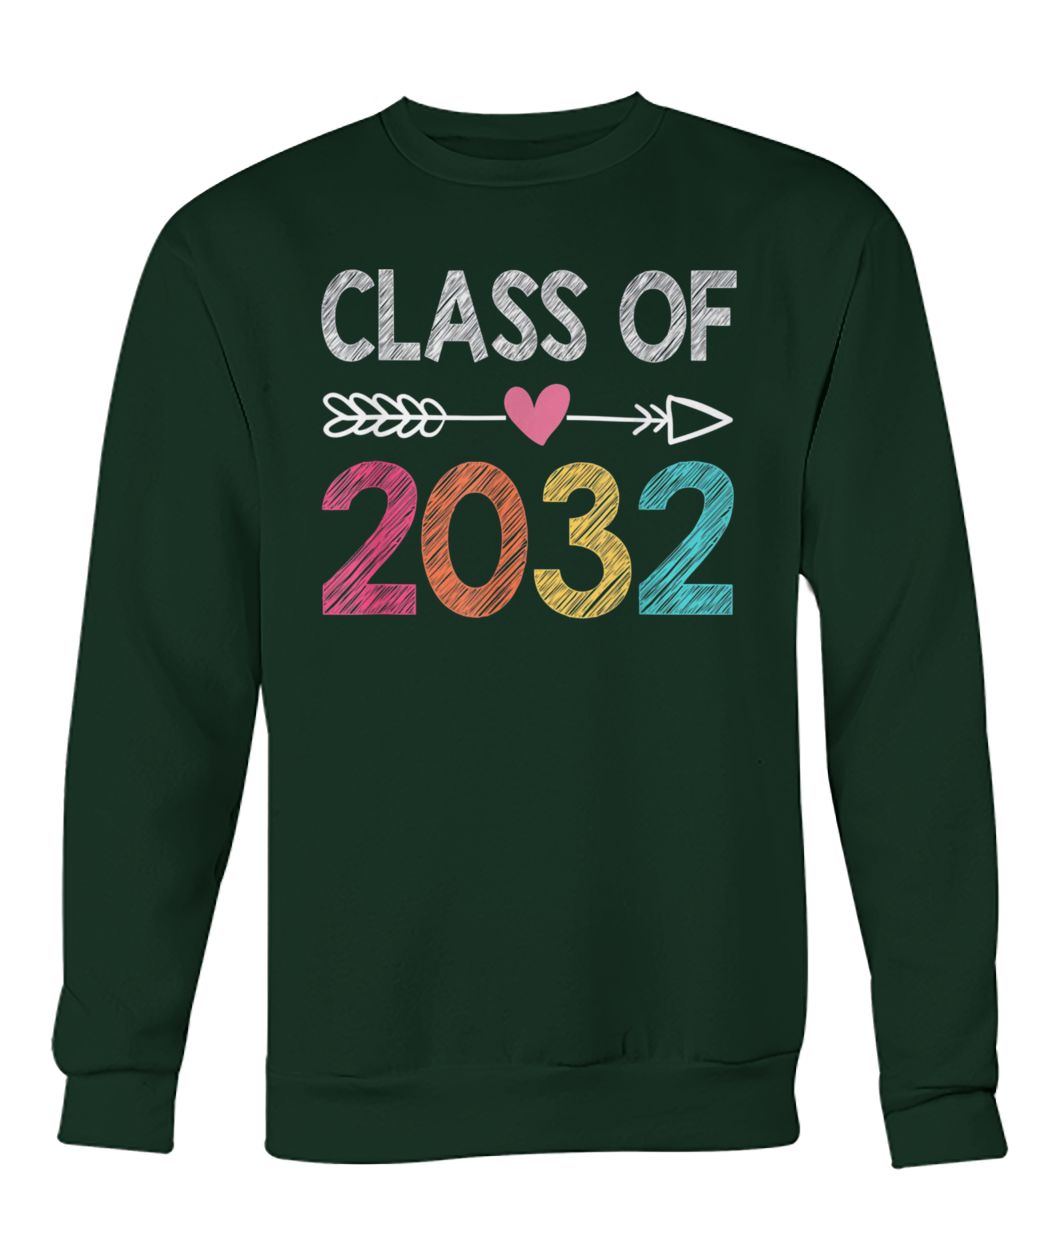 Preschool graduation class of 2032 crew neck sweatshirt